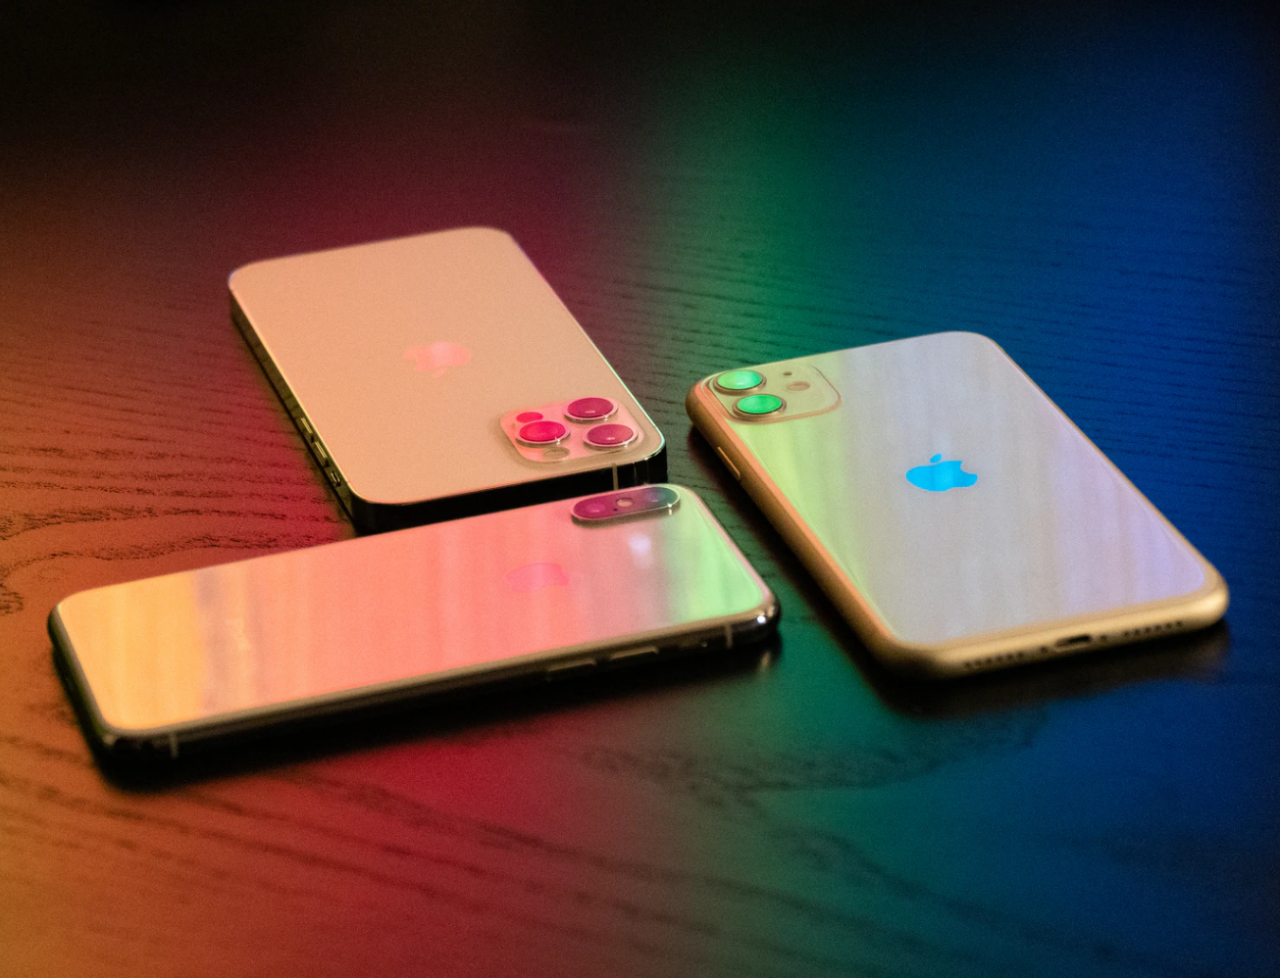 苹果宣布将在印度生产 iPhone 12 系列产品